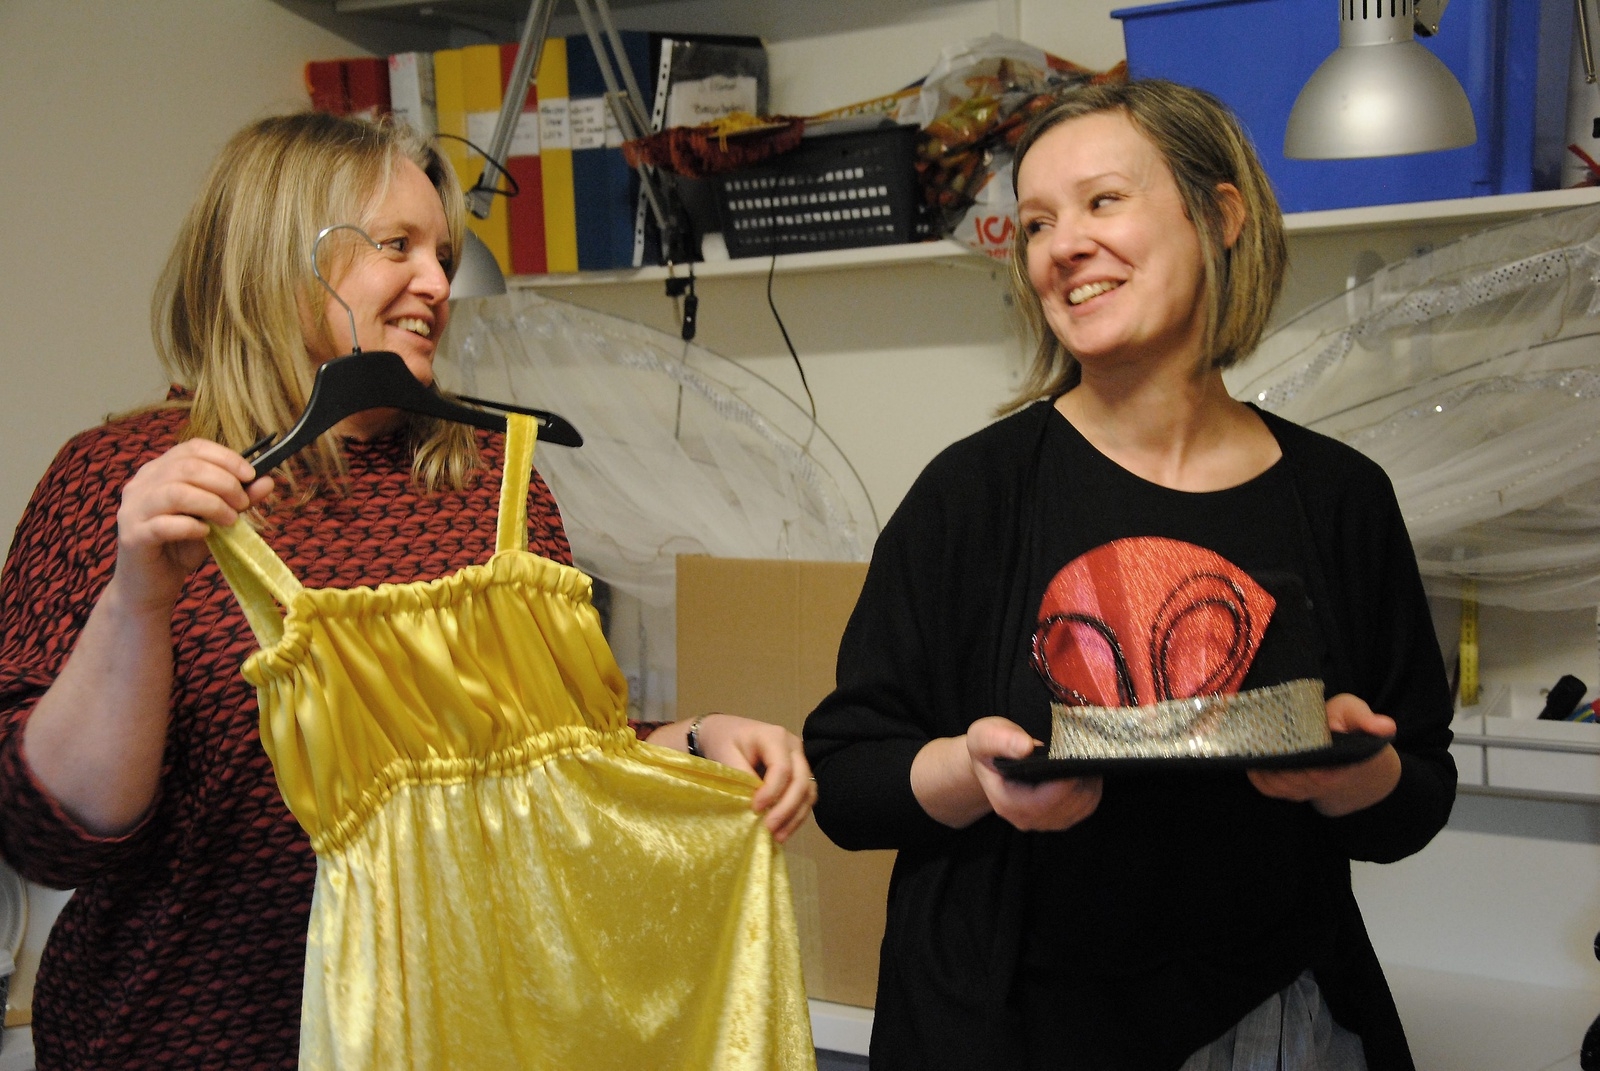 Att ha kul och kunna samarbeta bra är viktigt för Annette Weréen och Joanna Idström. 
							                   FOTO: SUSANNE GÄRE